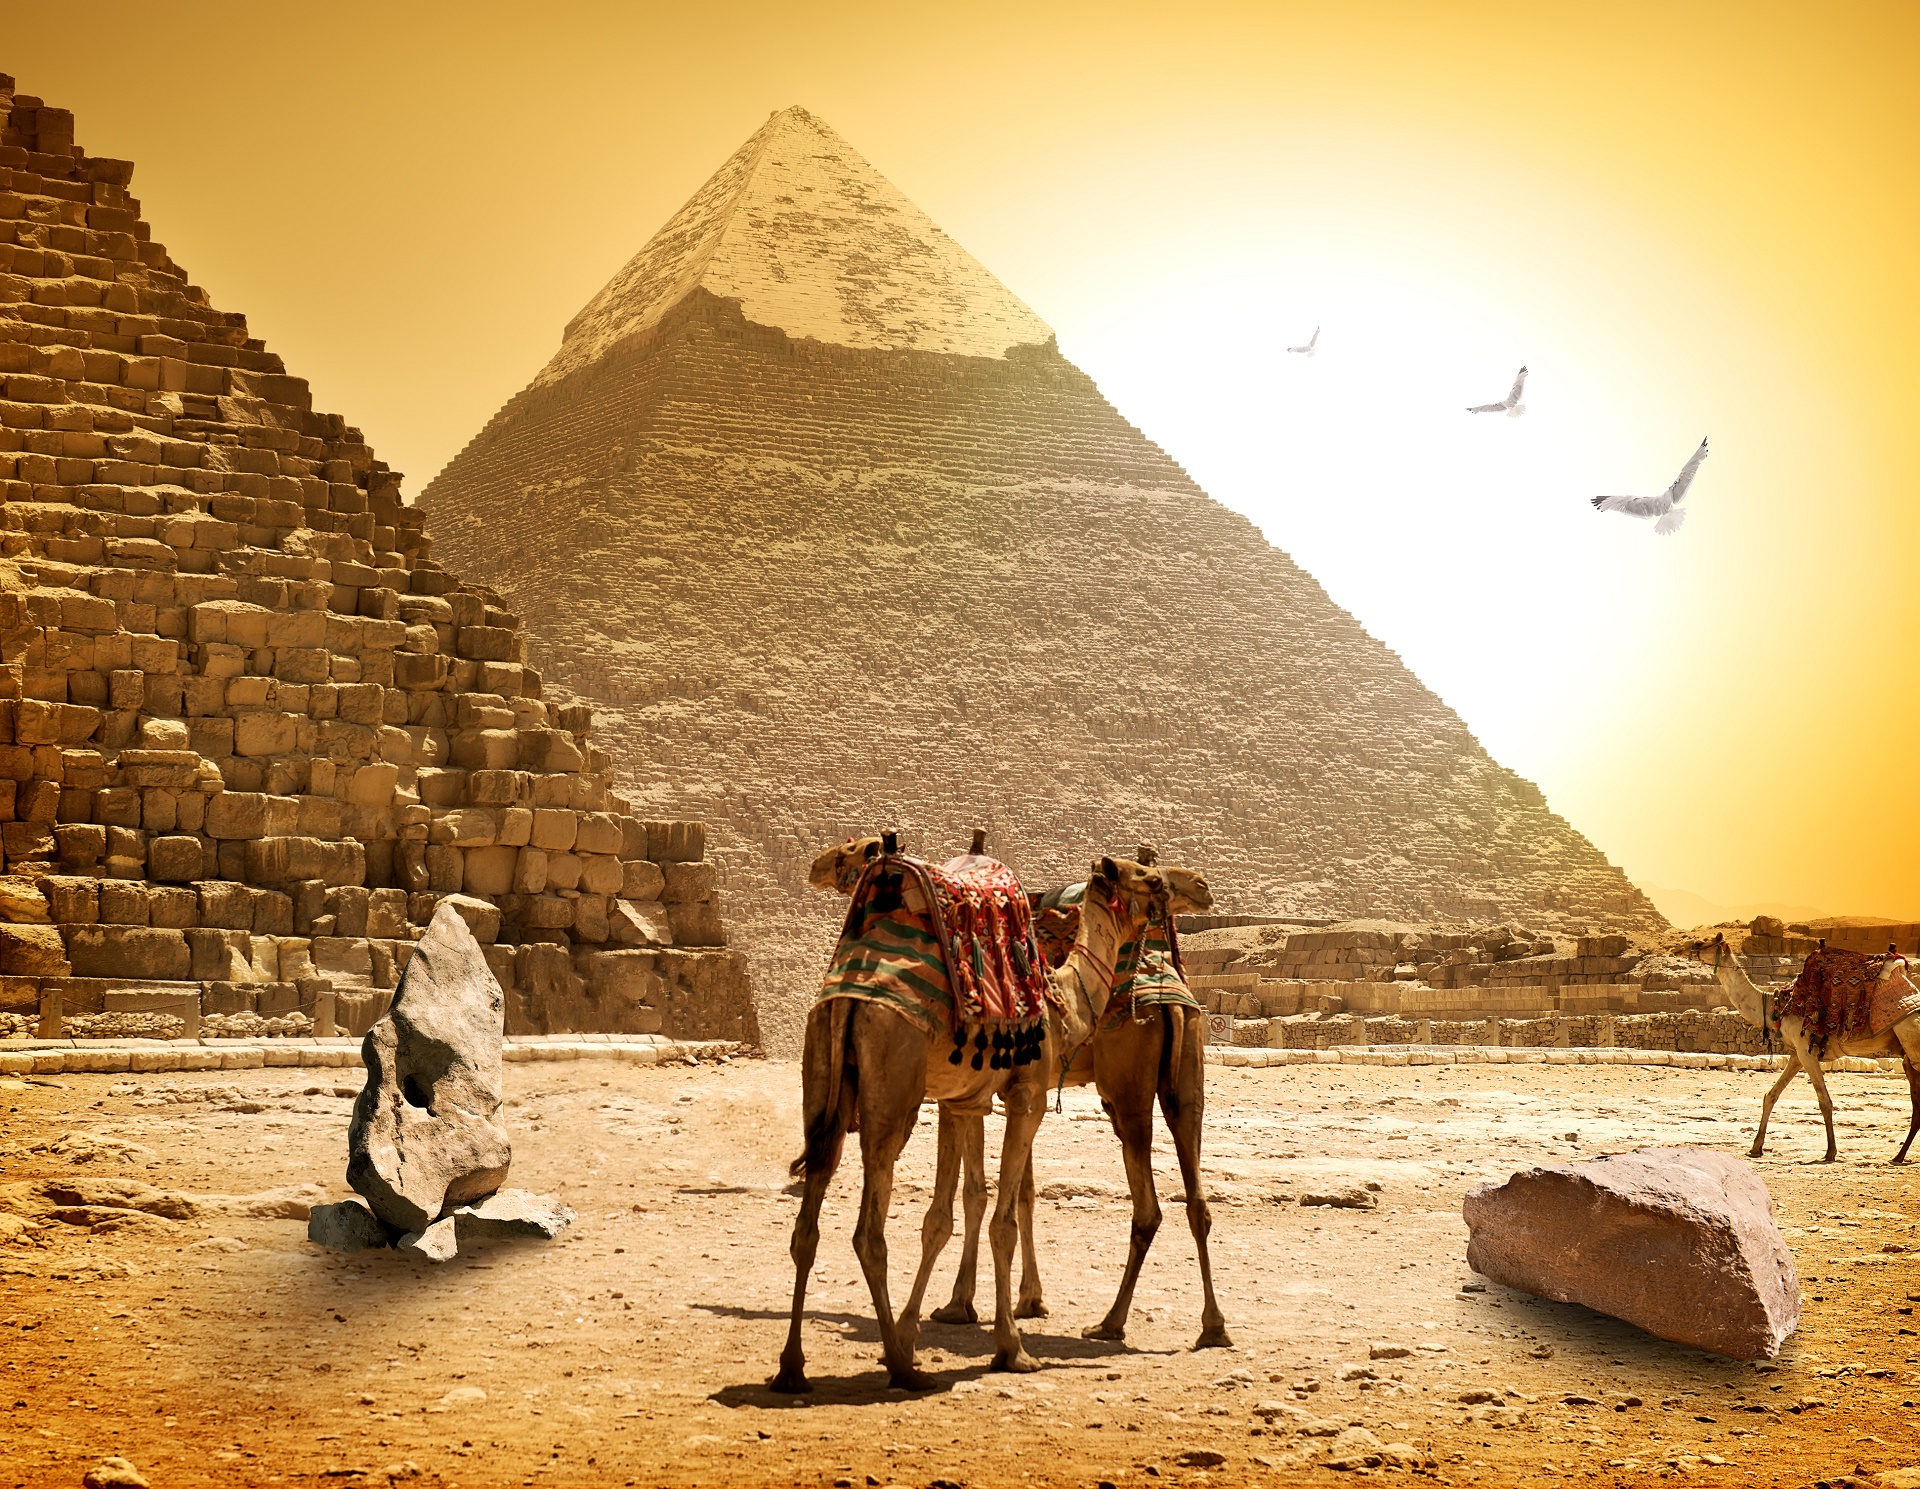 Скачать обои бесплатно Верблюды, Пирамида, Сделано Человеком, Египетский картинка на рабочий стол ПК